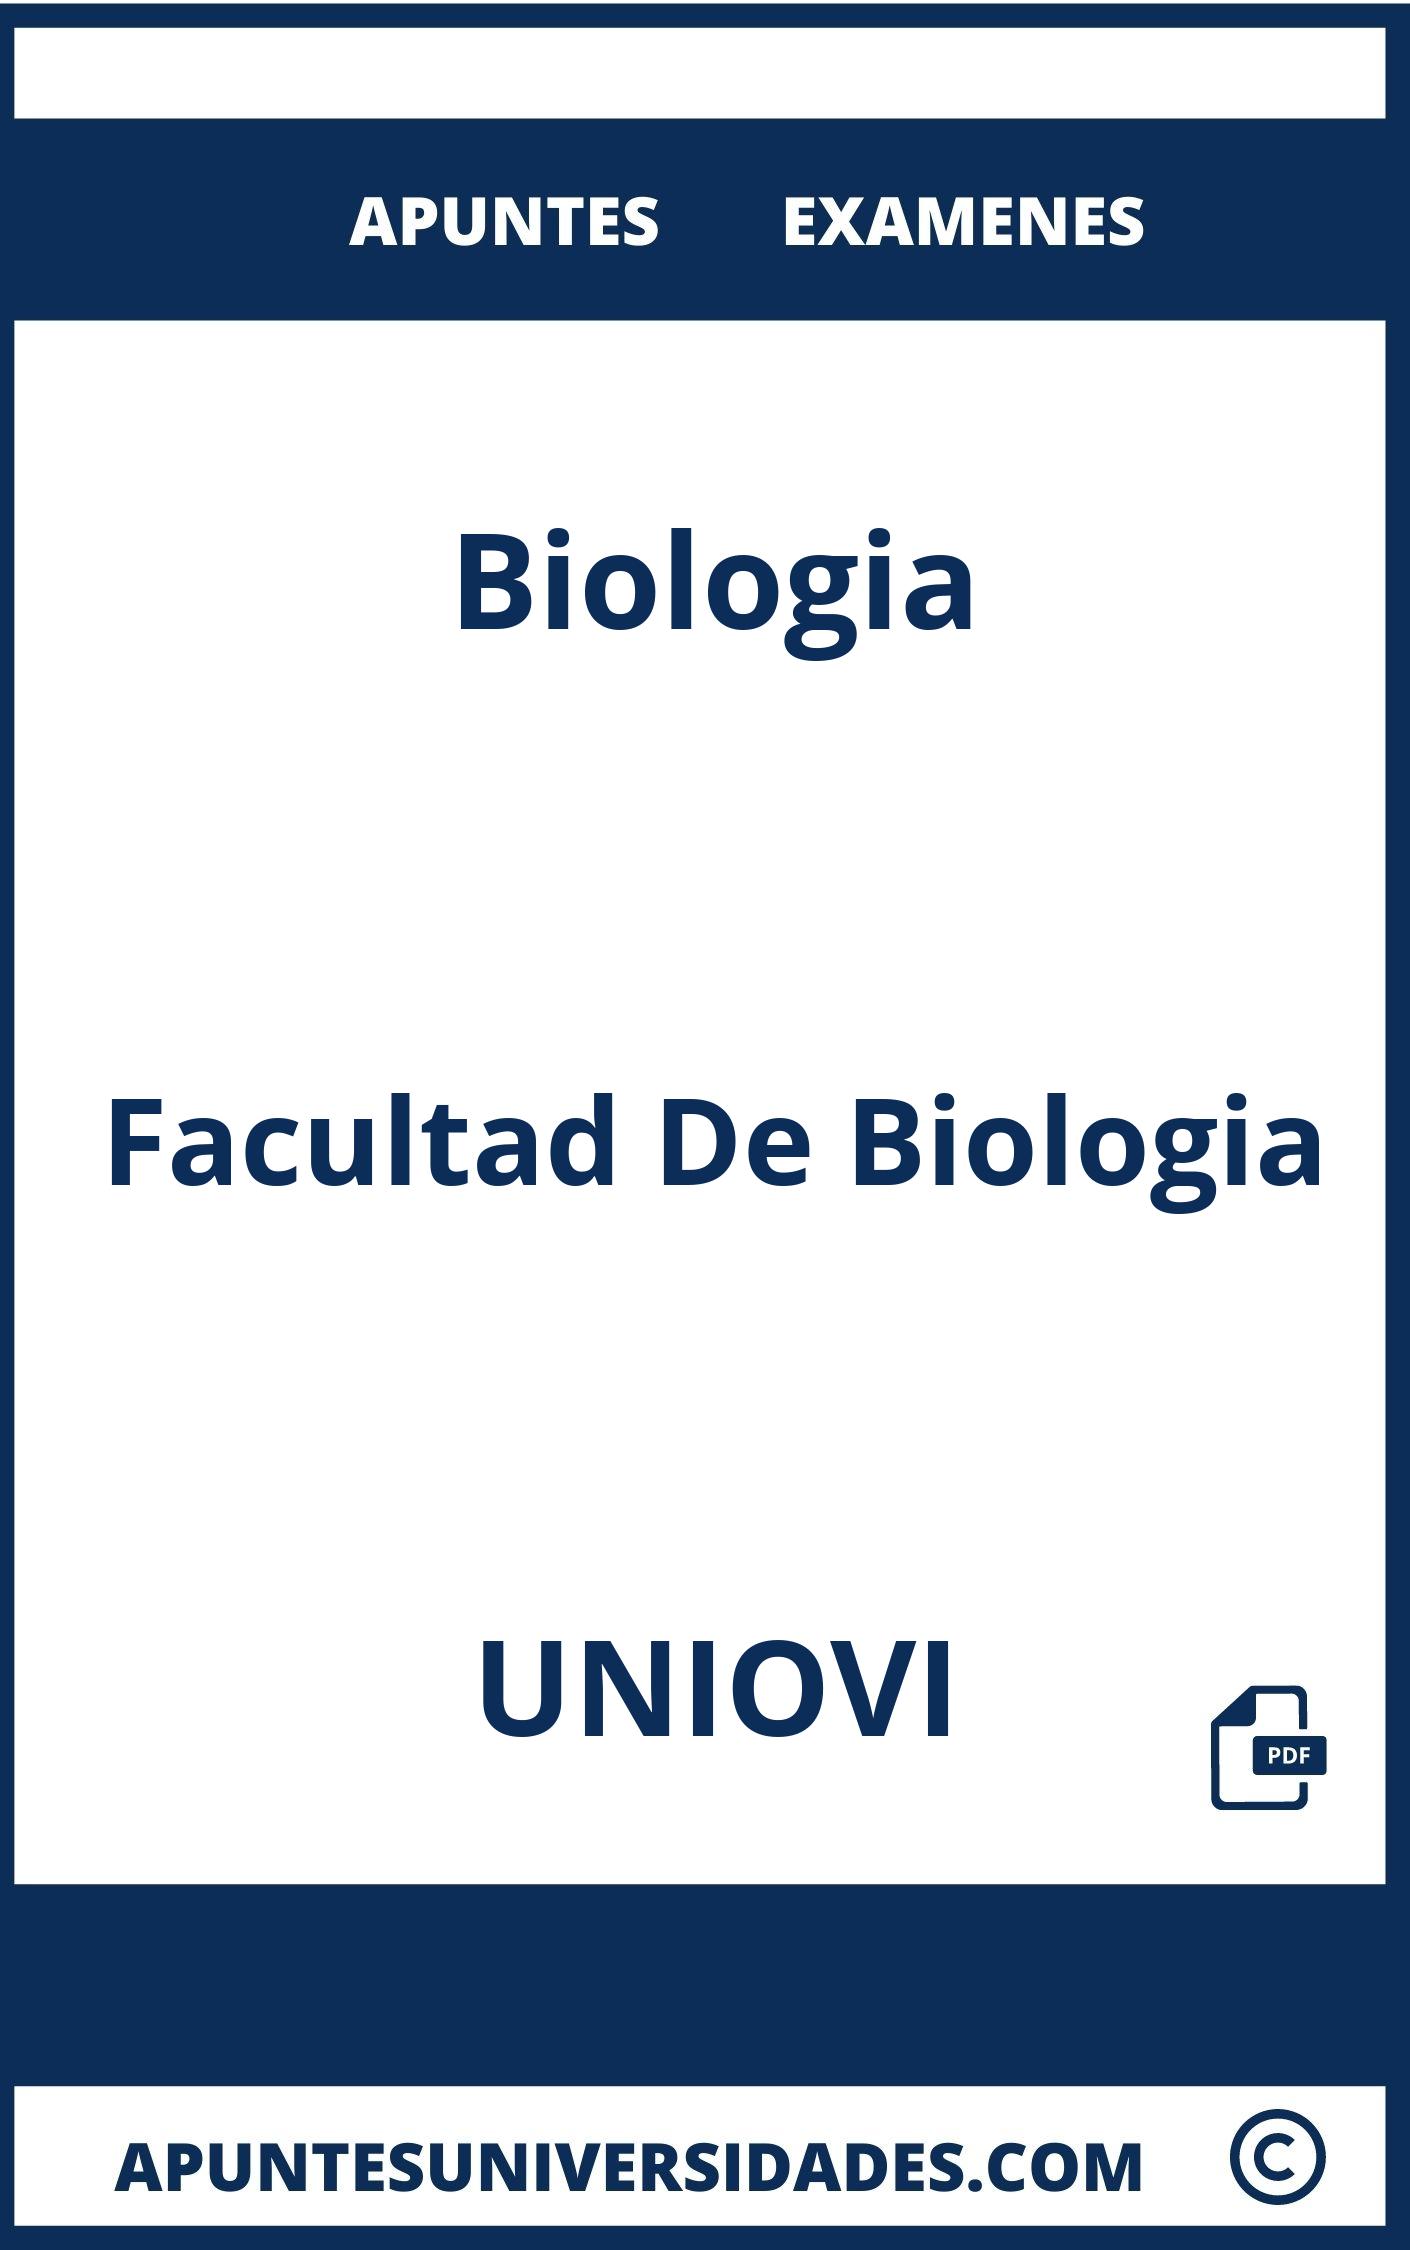 Biologia UNIOVI Examenes Apuntes